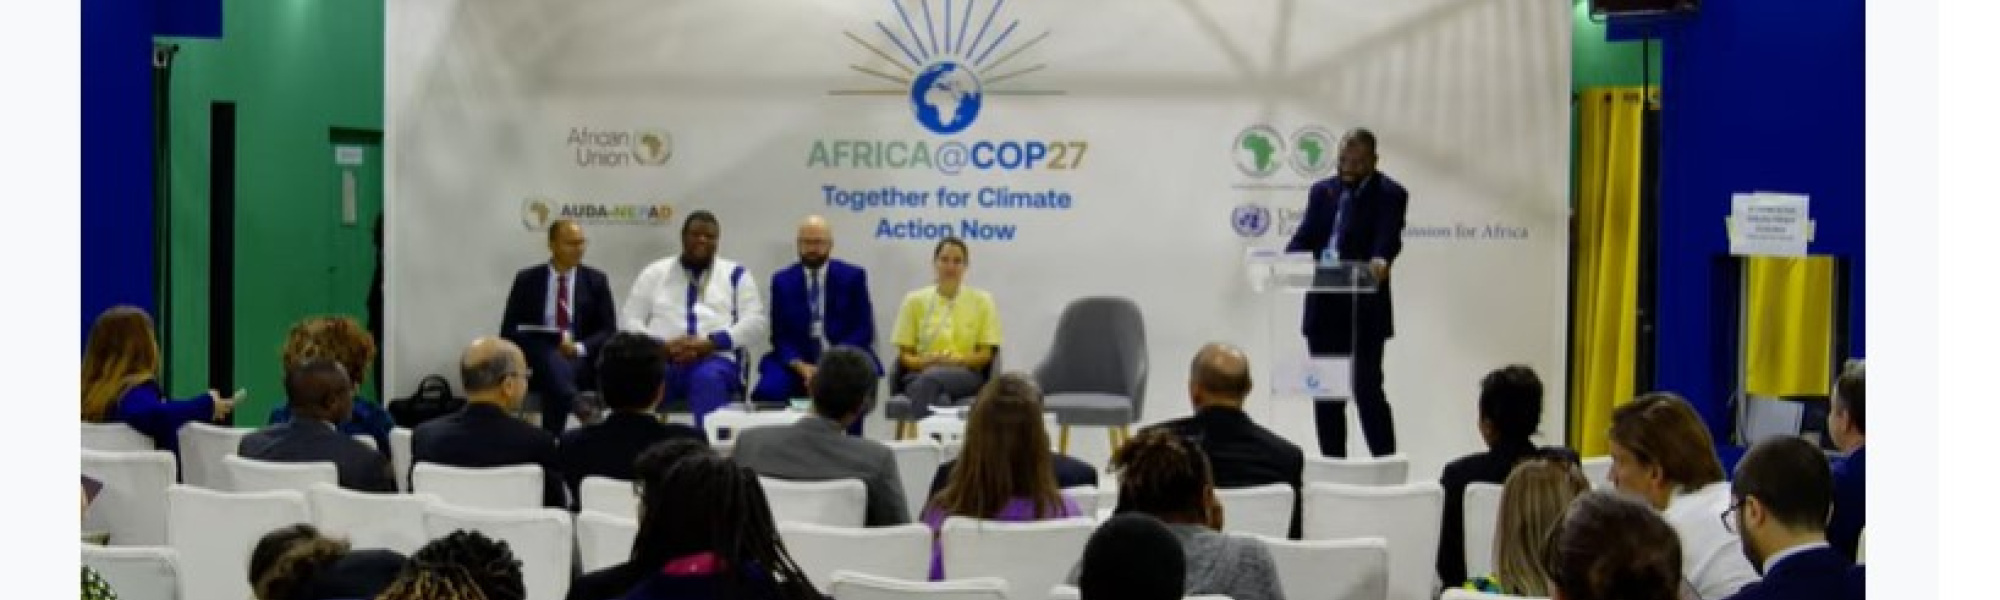 UN Climate Conference (COP 27)